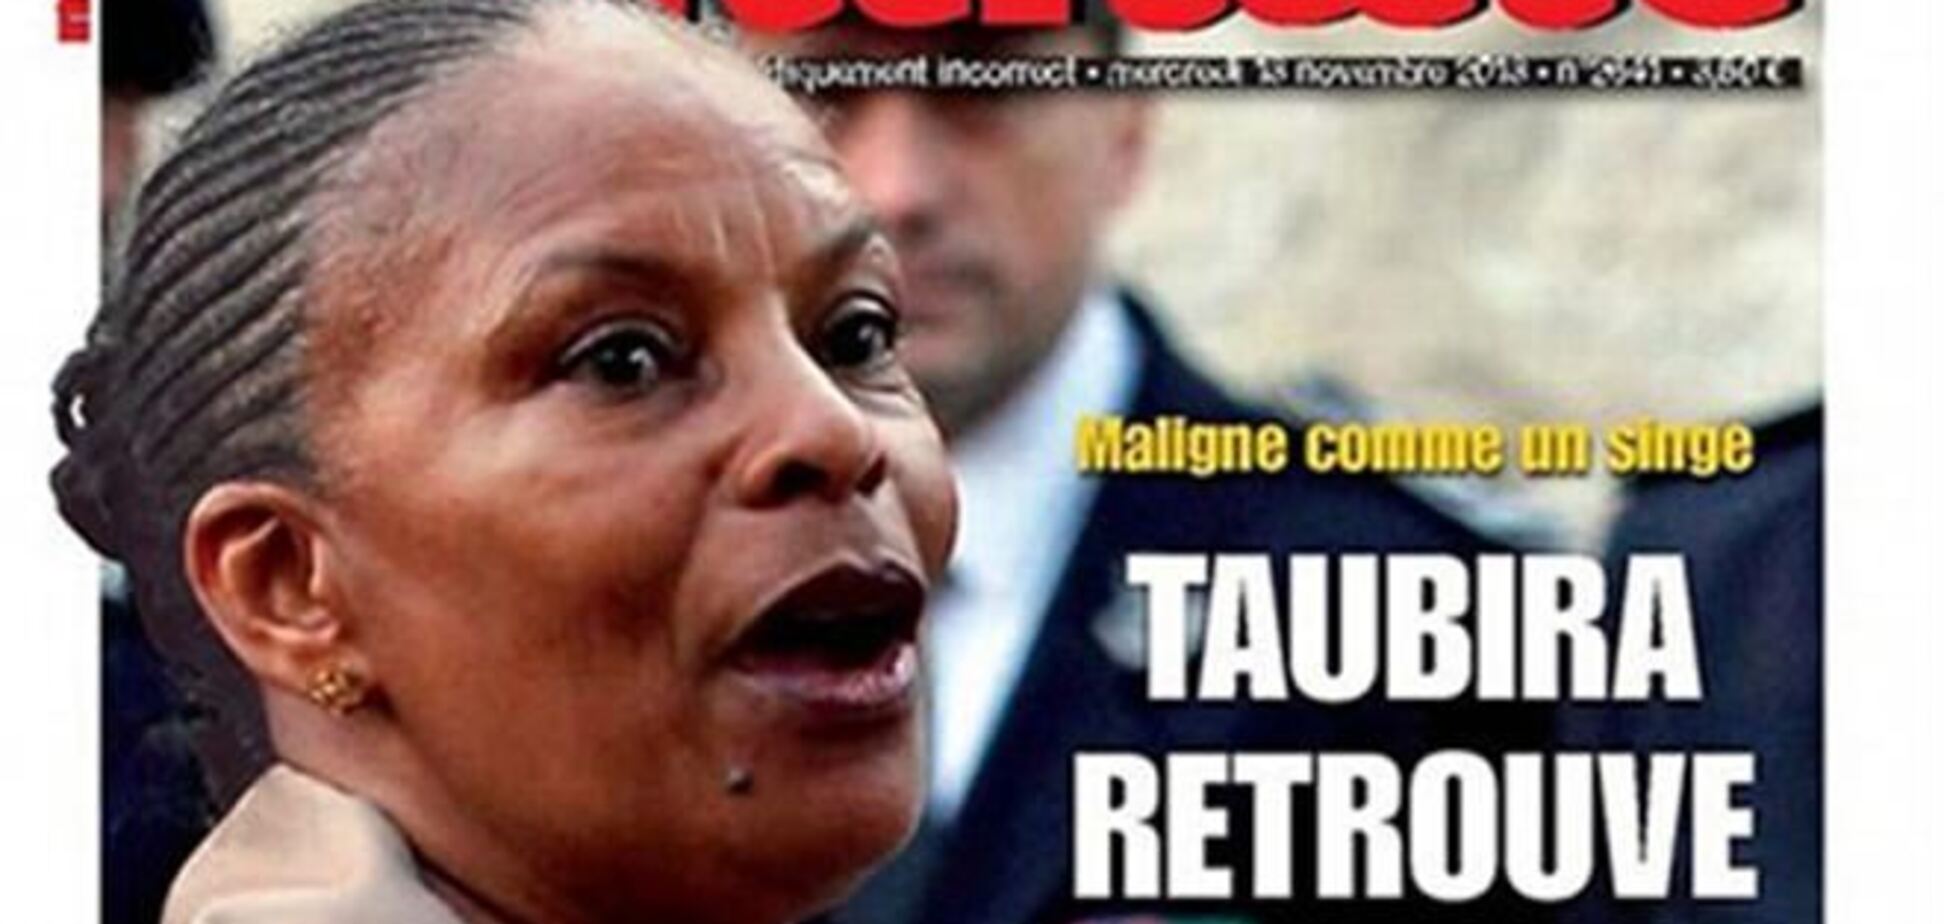 Французский журнал осмелился сравнить чернокожего министра с обезьяной